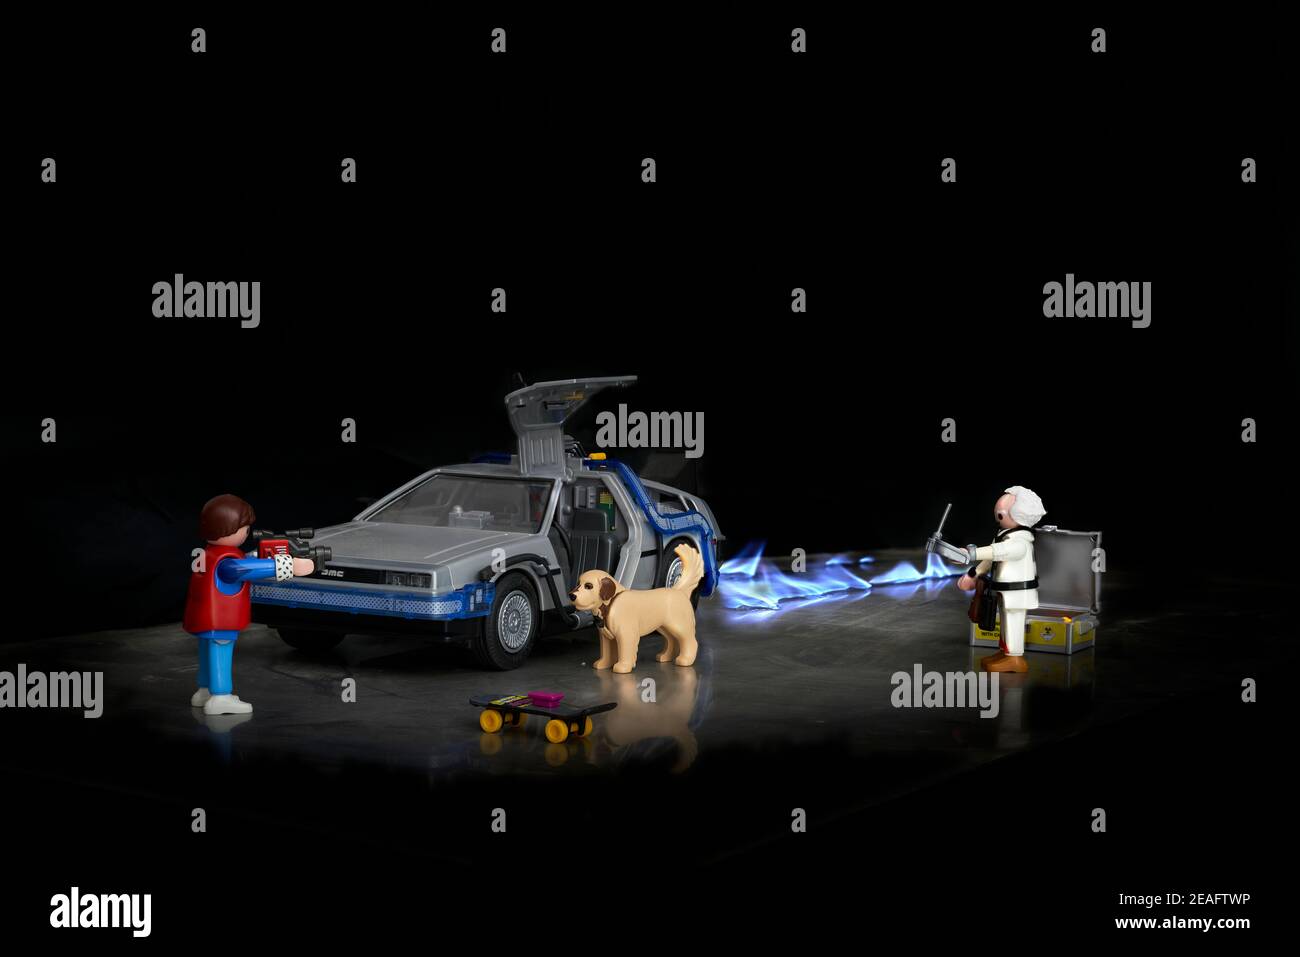 La récréation de la scène du film Retour vers le futur Utilisation d'un  ensemble de jouets Playmobil de modèles et de temps DeLorean voiture-machine  Photo Stock - Alamy